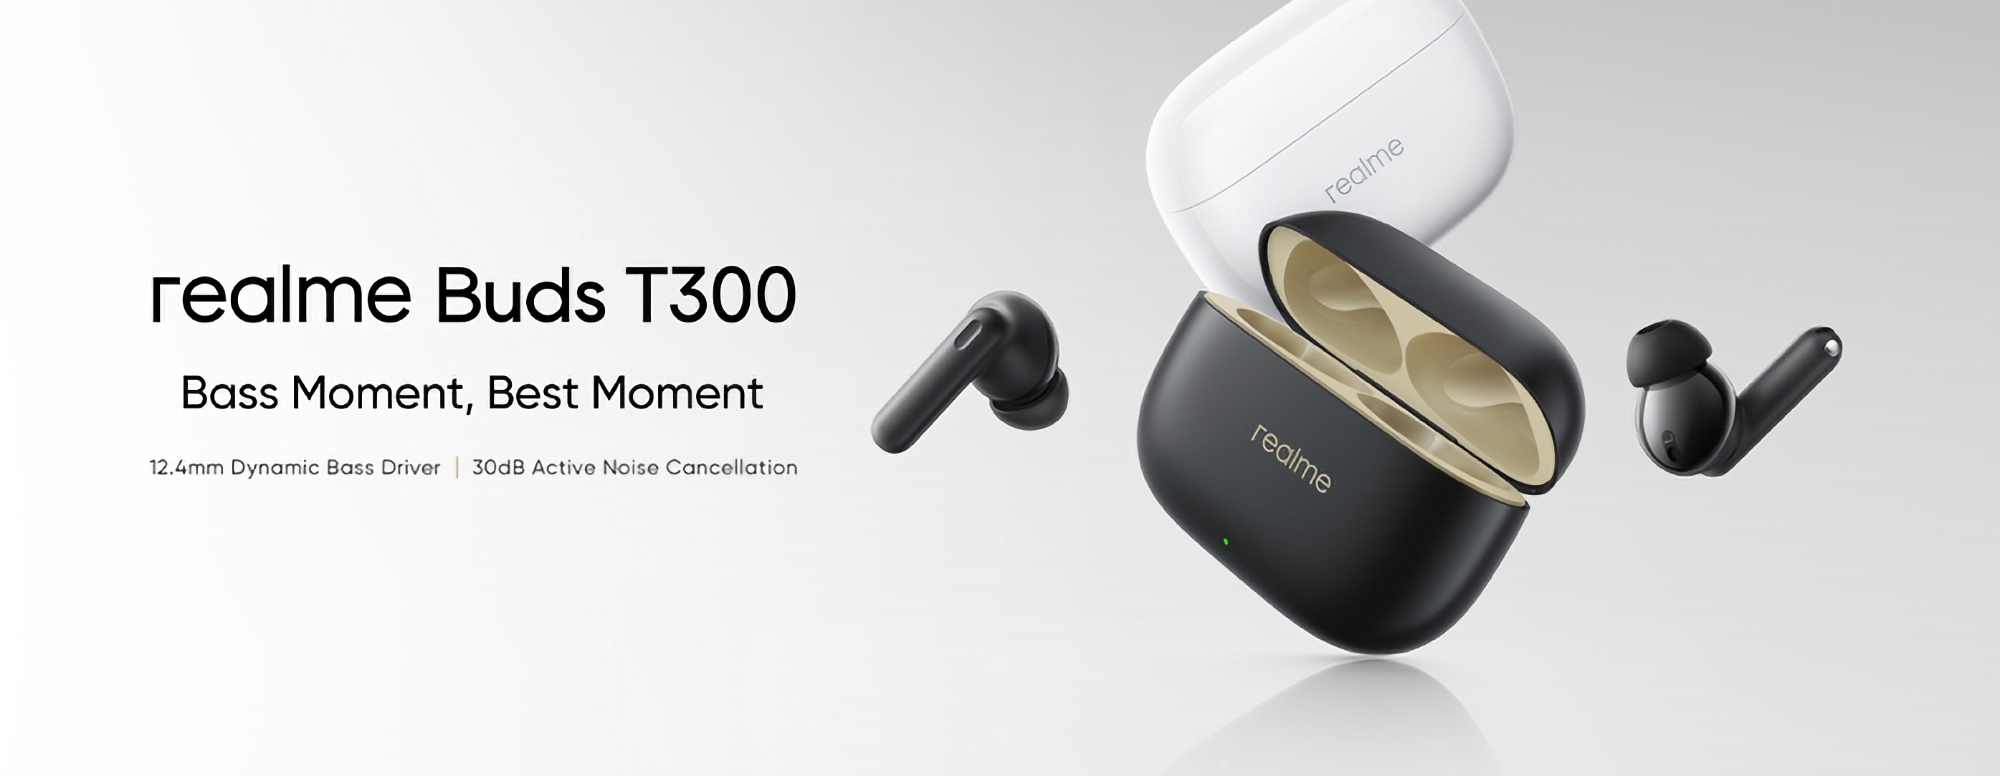 realme Buds T300: TWS-Kopfhörer mit ANC, Spatial Audio Technologie und bis zu 40 Stunden Akkulaufzeit für $25